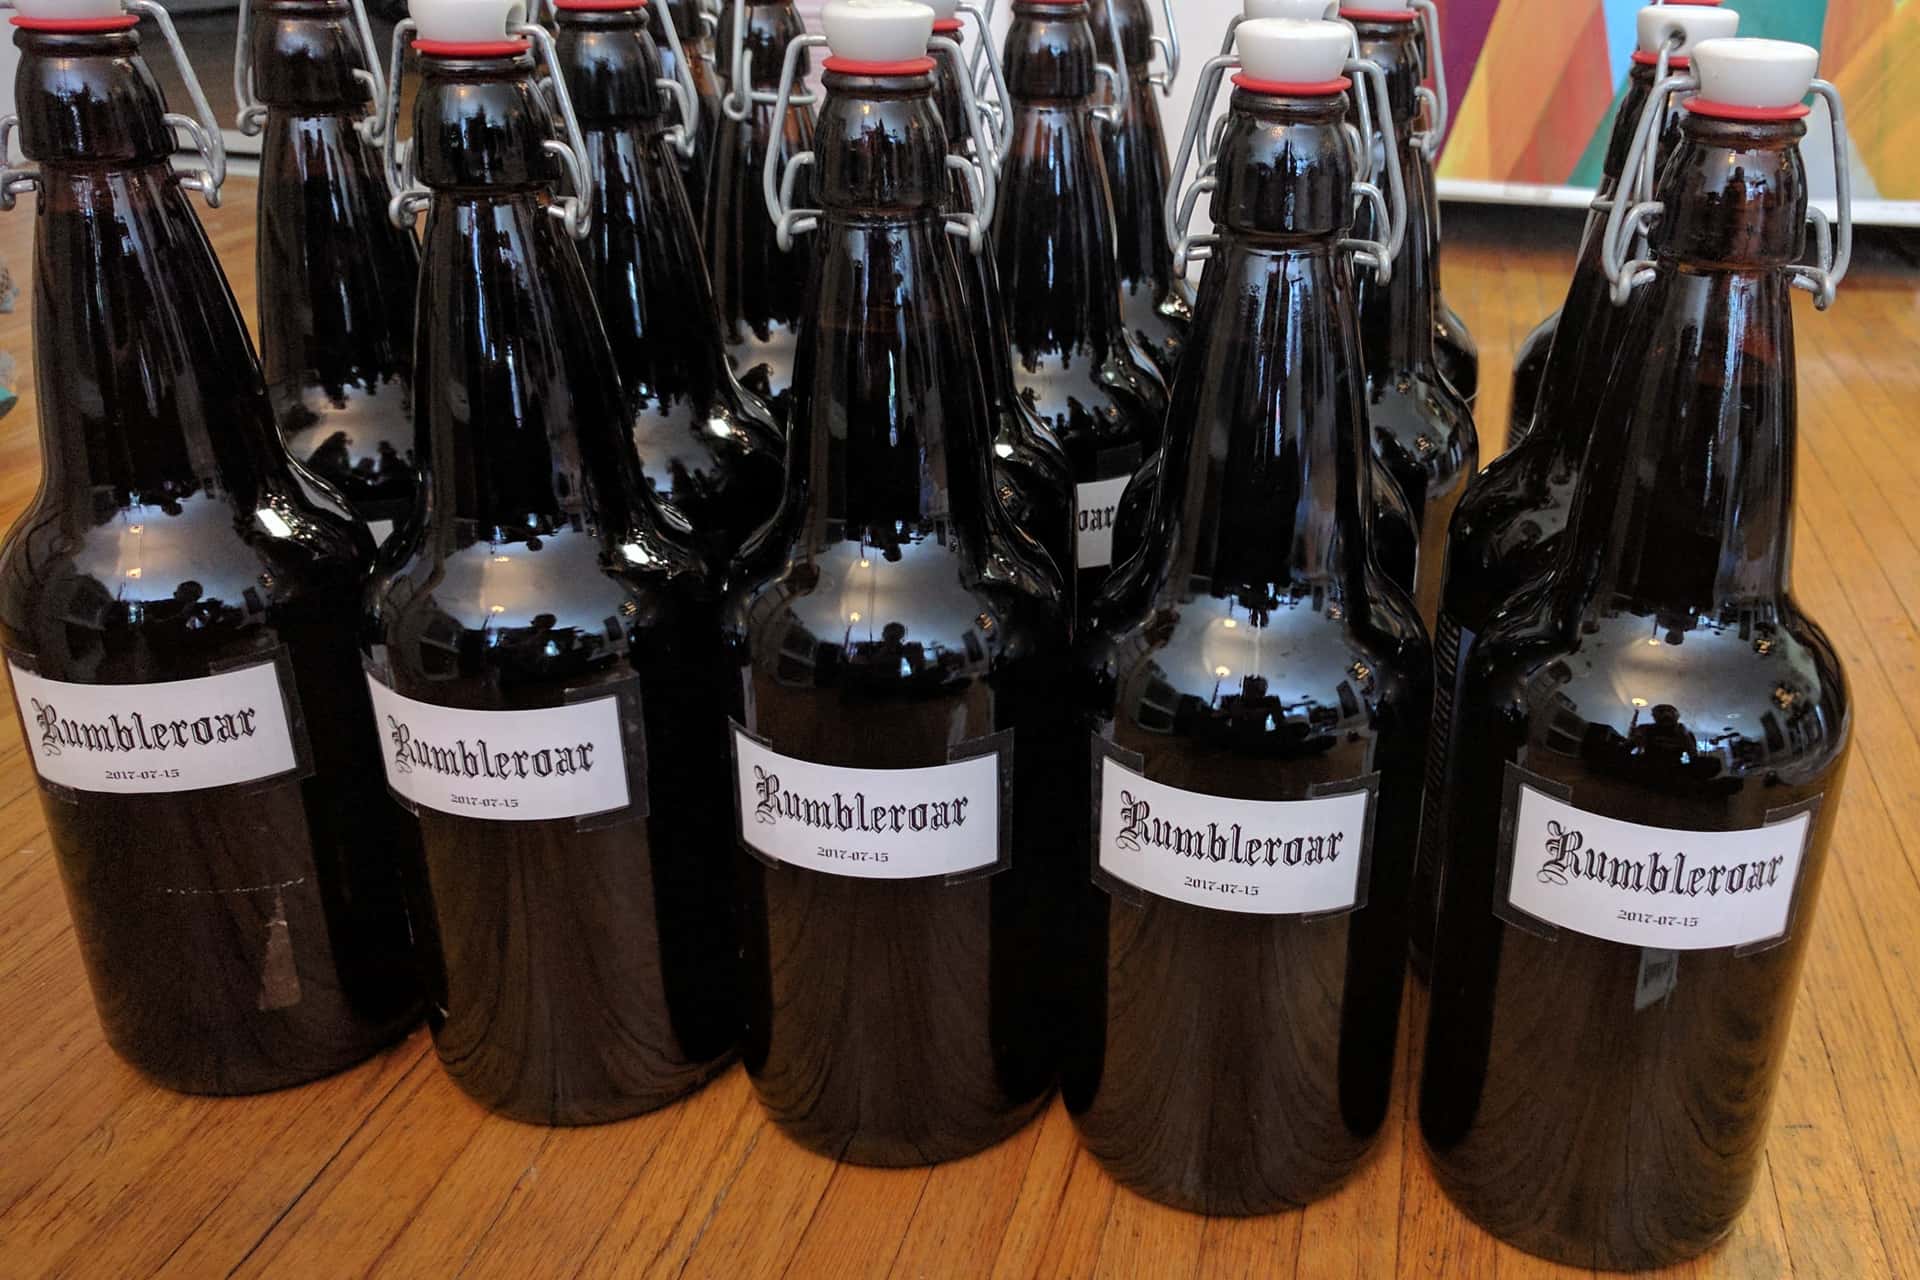 homebrew beer bottles labeled “Rumbleroar”